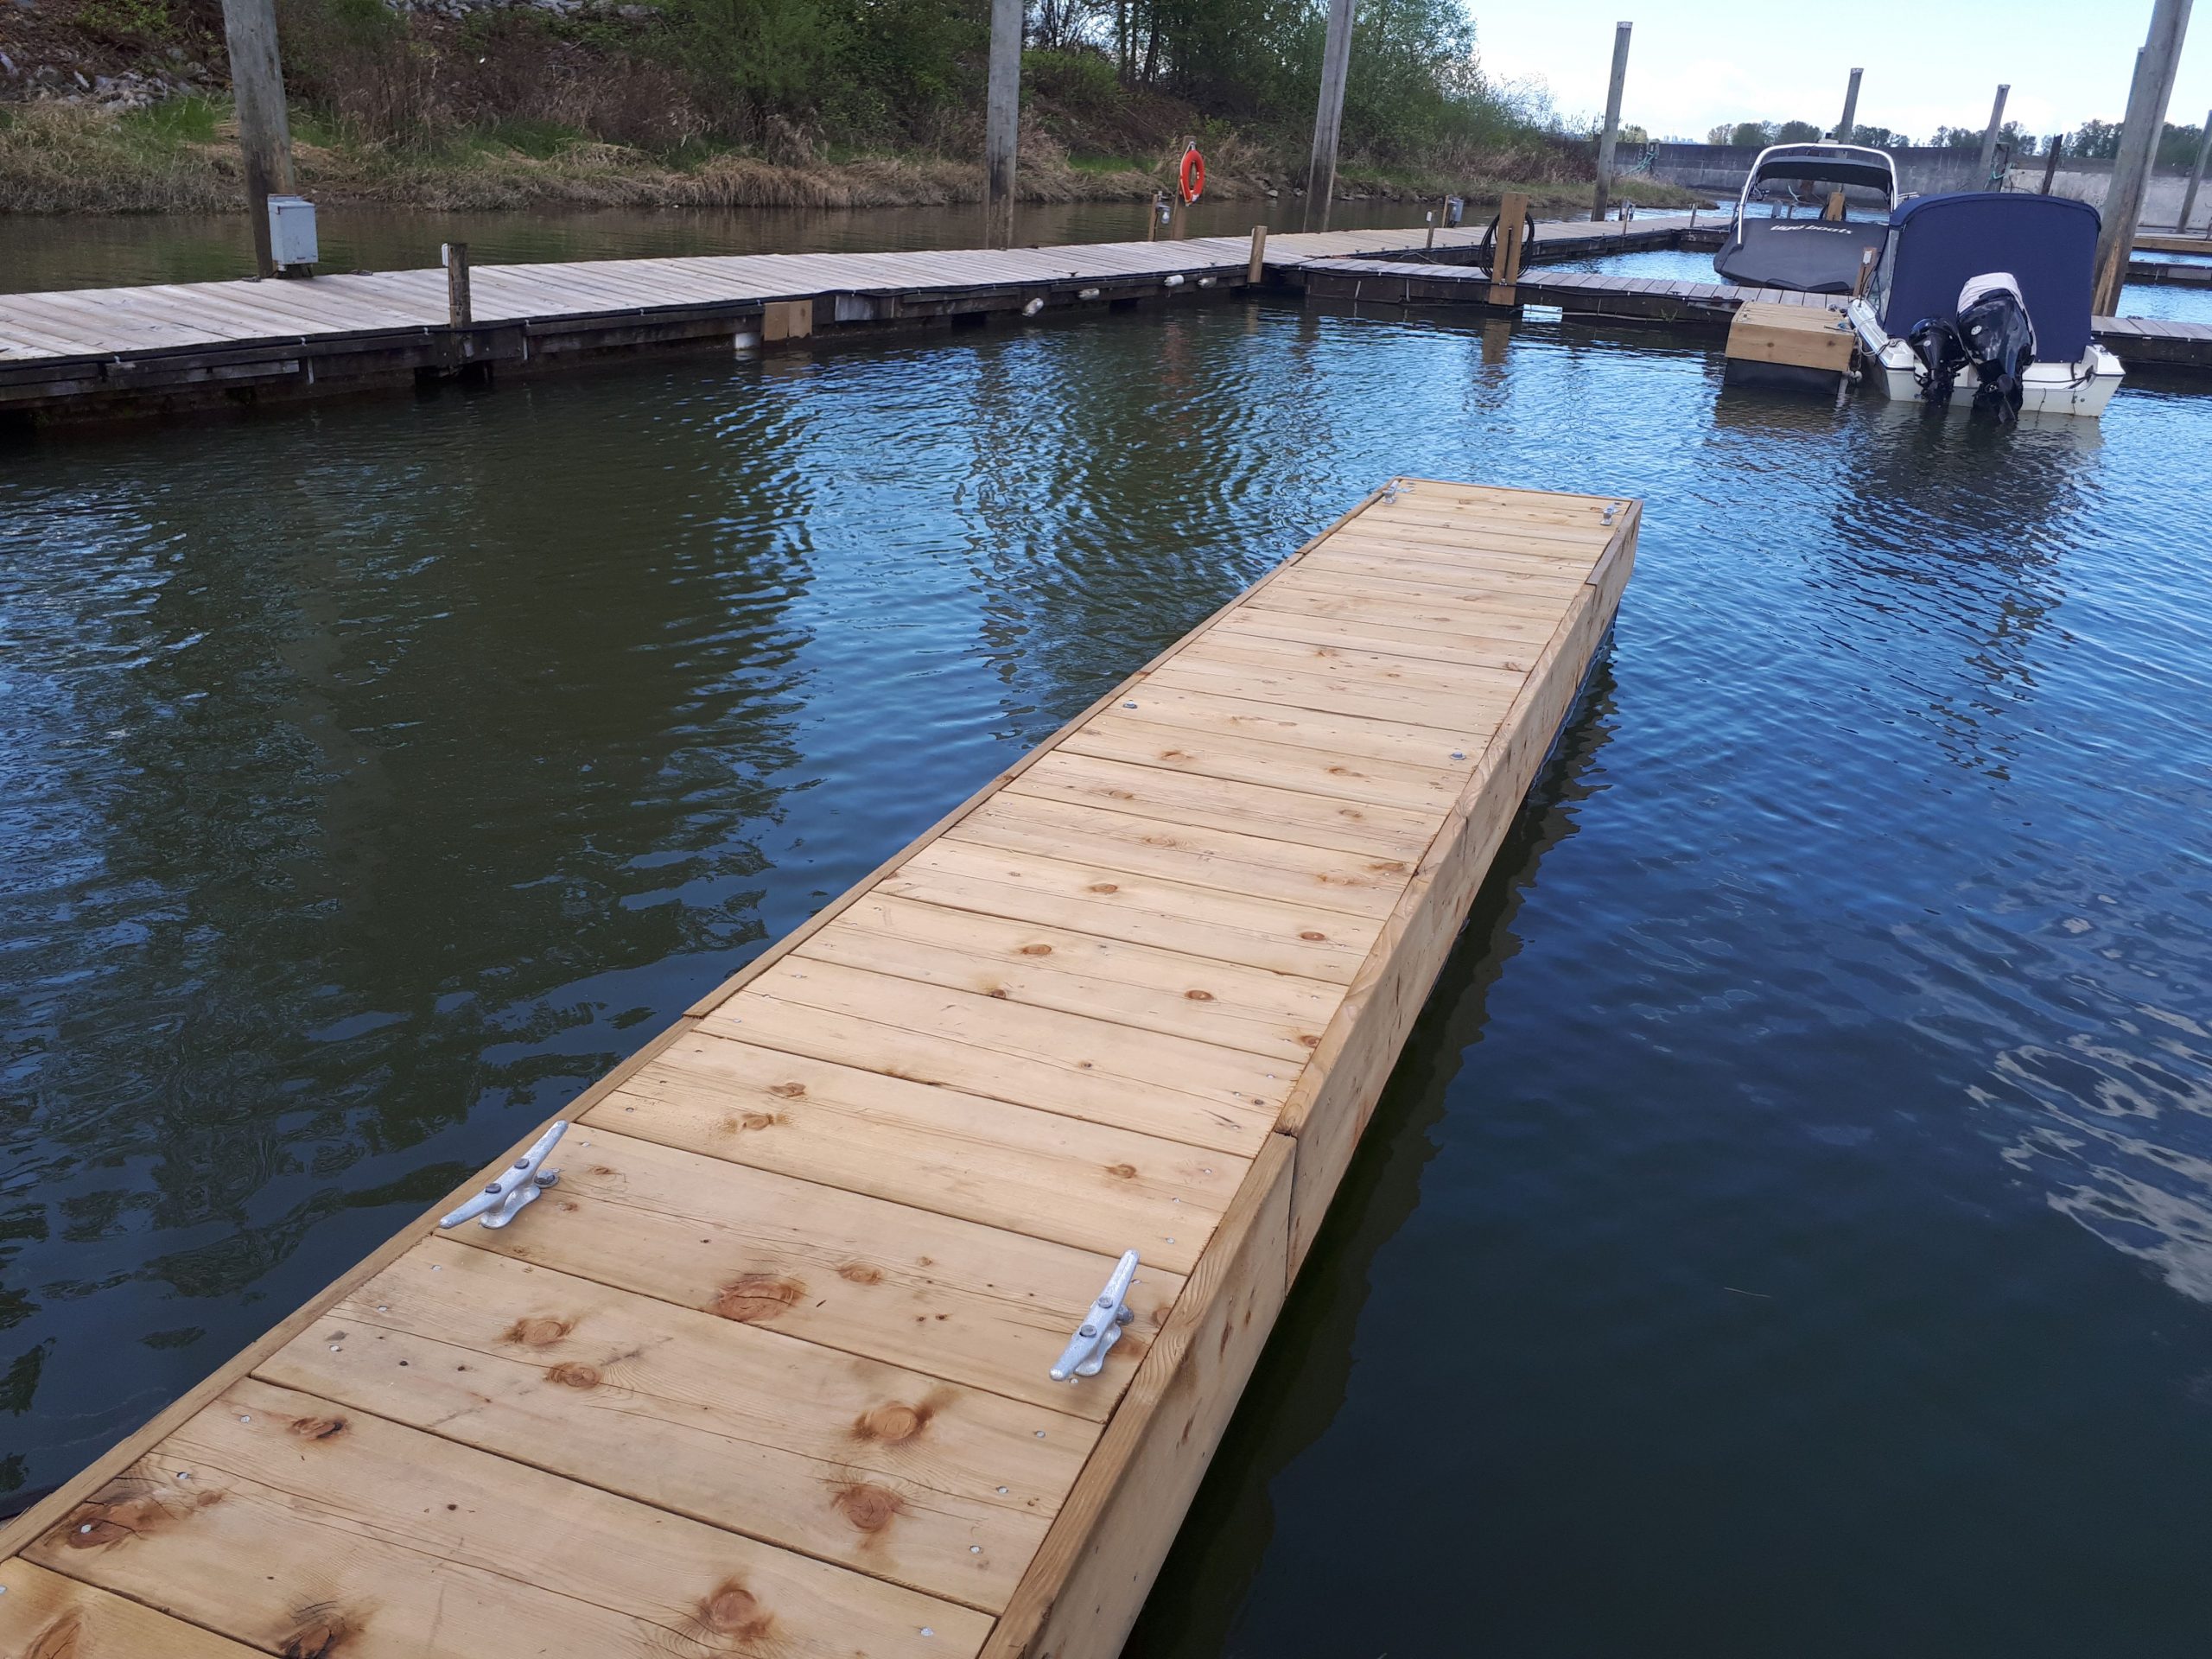 Brand new docks at the Pitt Meadows Marina